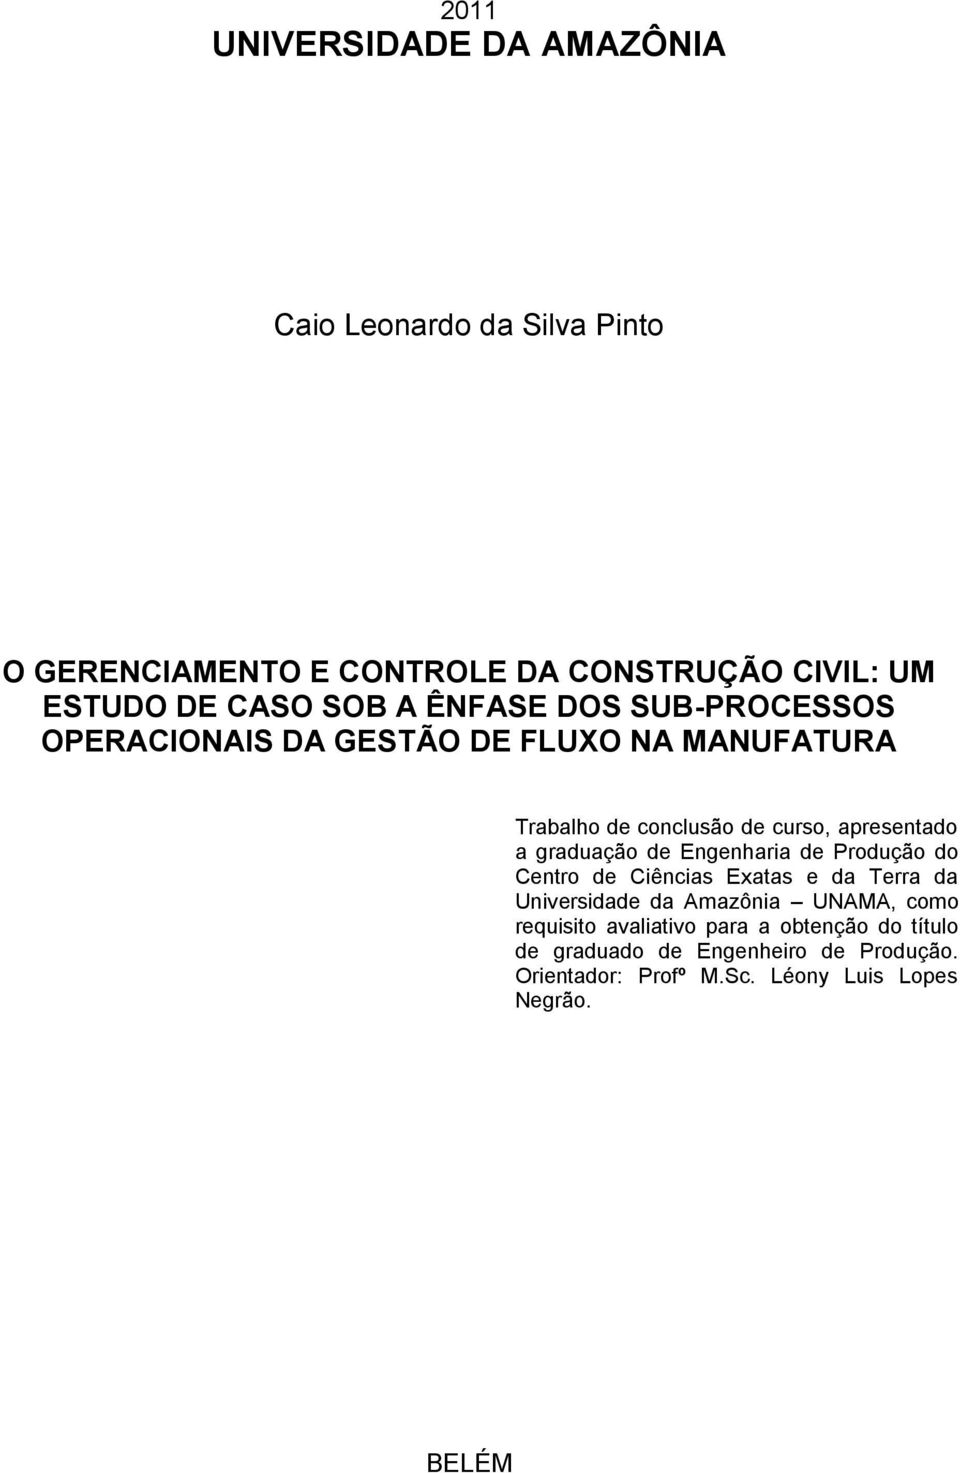 graduação de Engenharia de Produção do Centro de Ciências Exatas e da Terra da Universidade da Amazônia UNAMA, como requisito